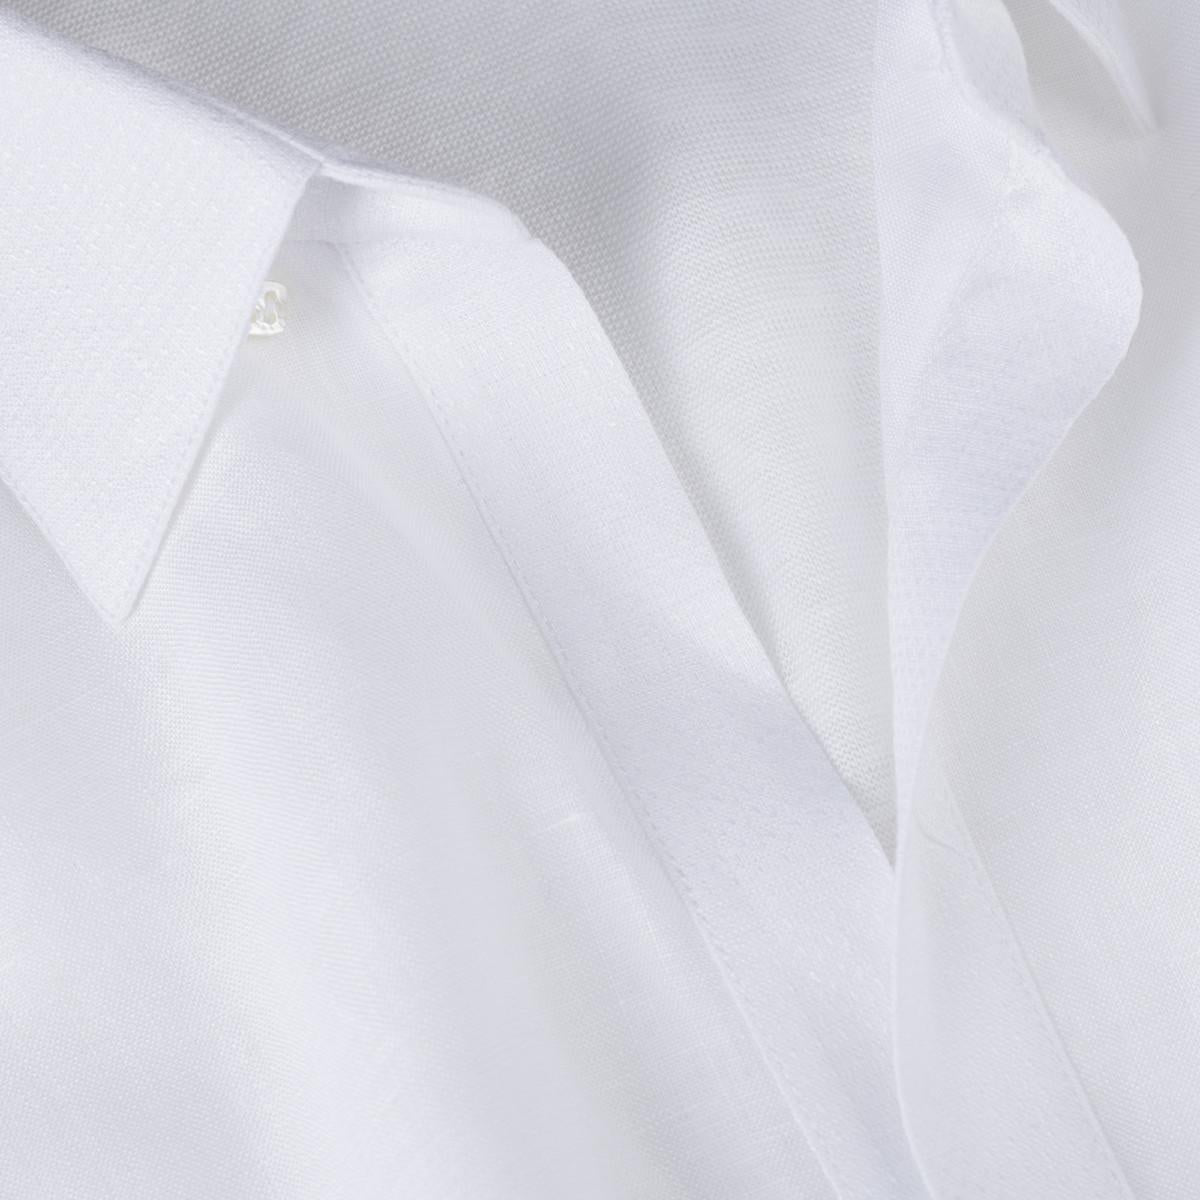 Camicia Portofino for man 100% Capri linen white t-shirt detail